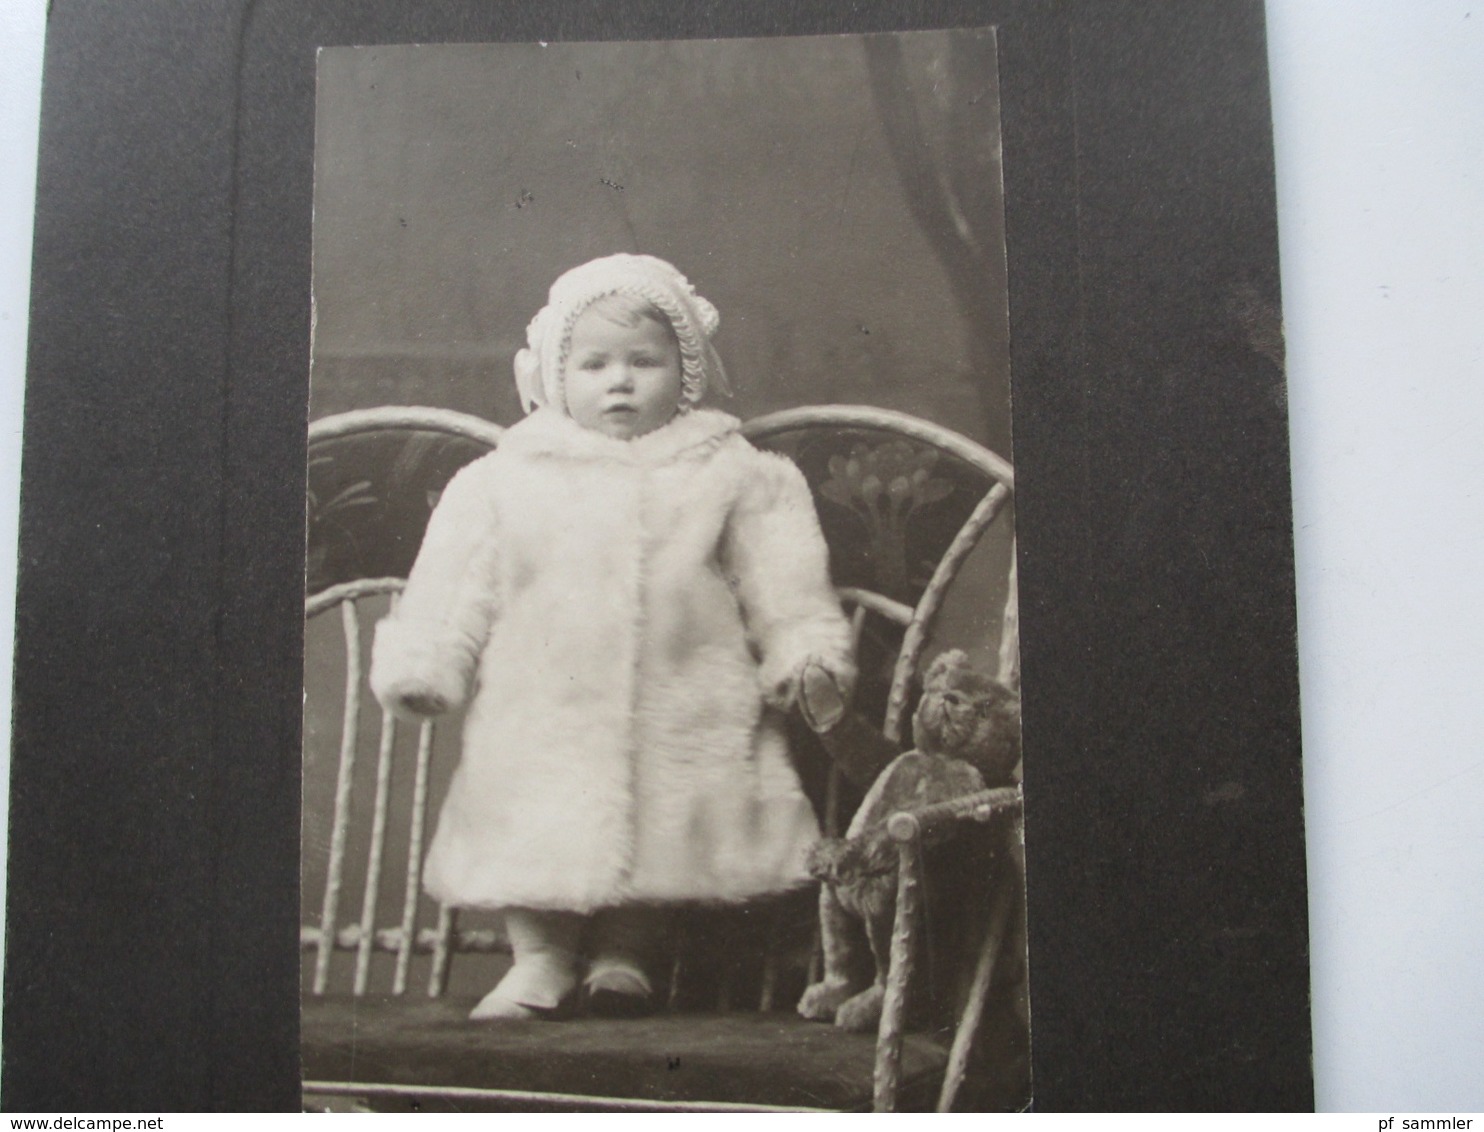 10 alte Fotos um 1900 mit Frauen / Kinder / Babies fast alle auf dicker Pappe! Interessant??